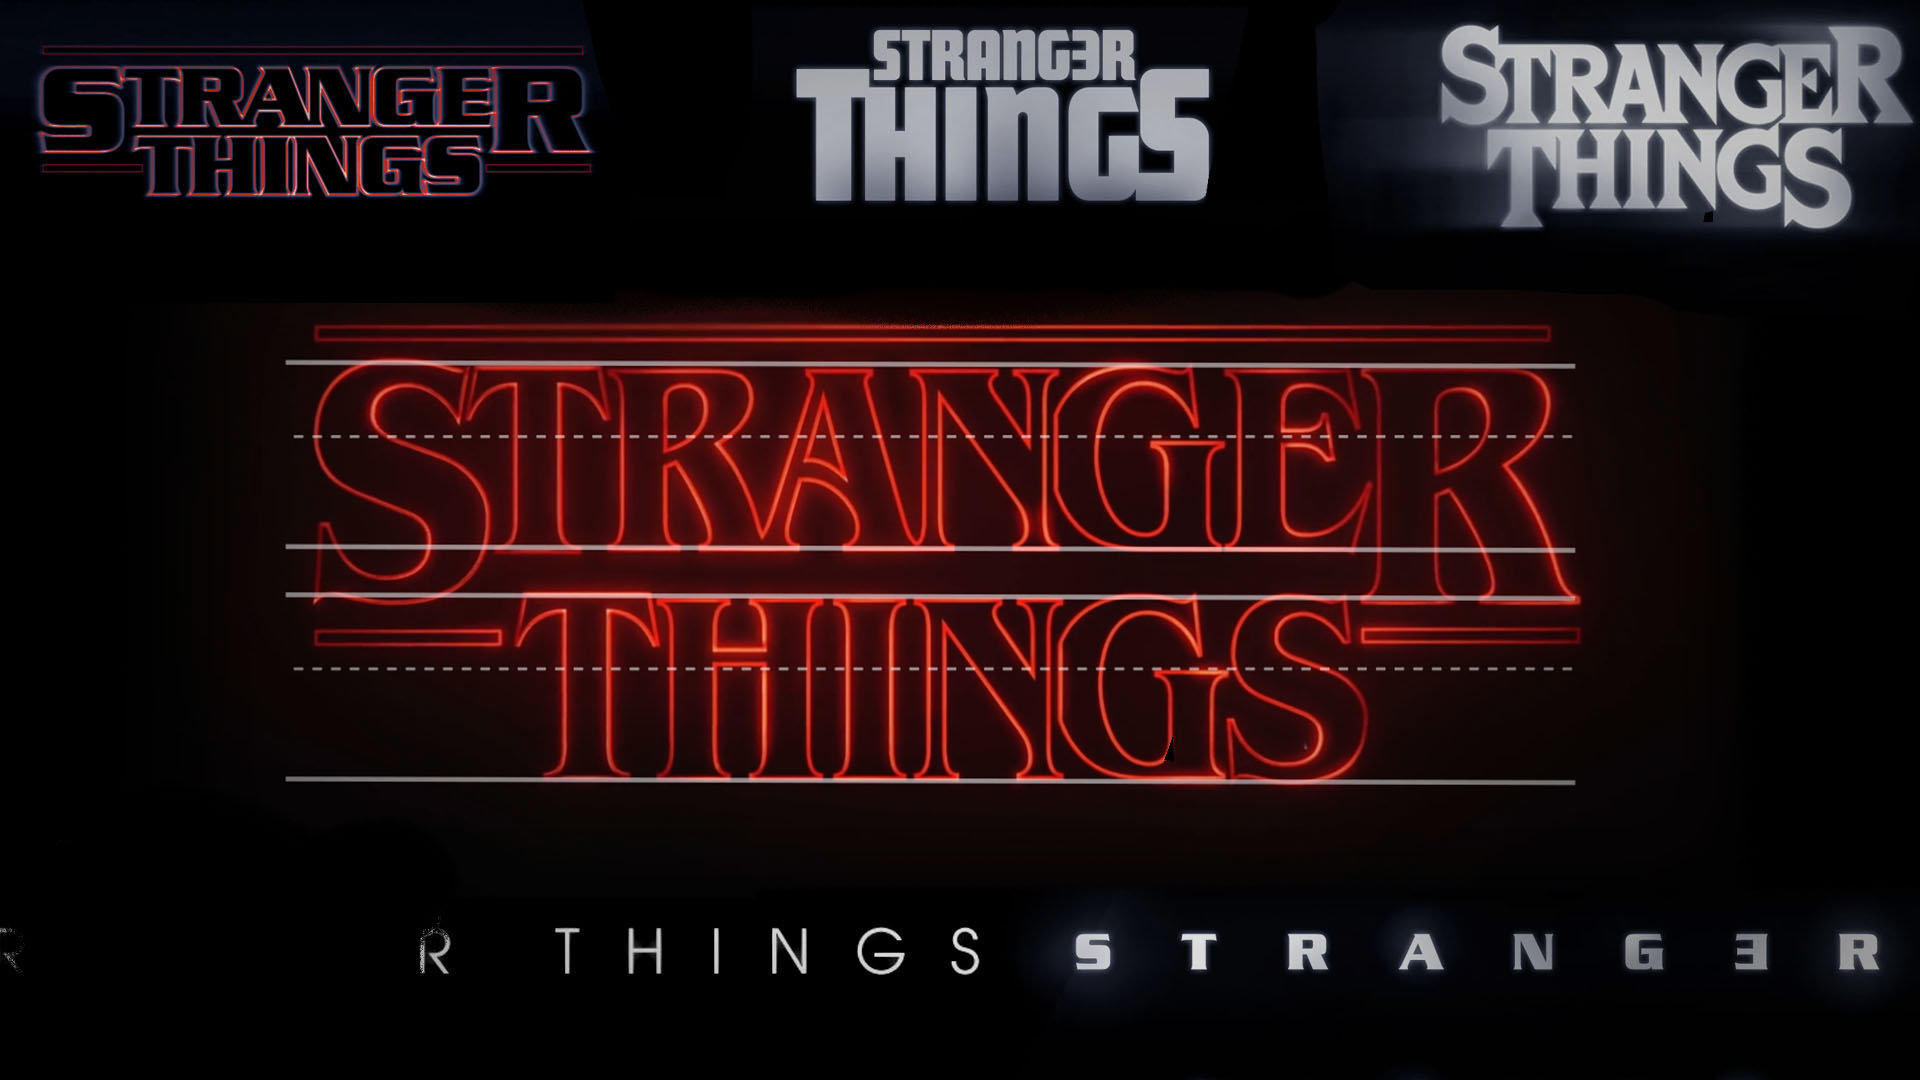 Stranger Things’ logo drafts